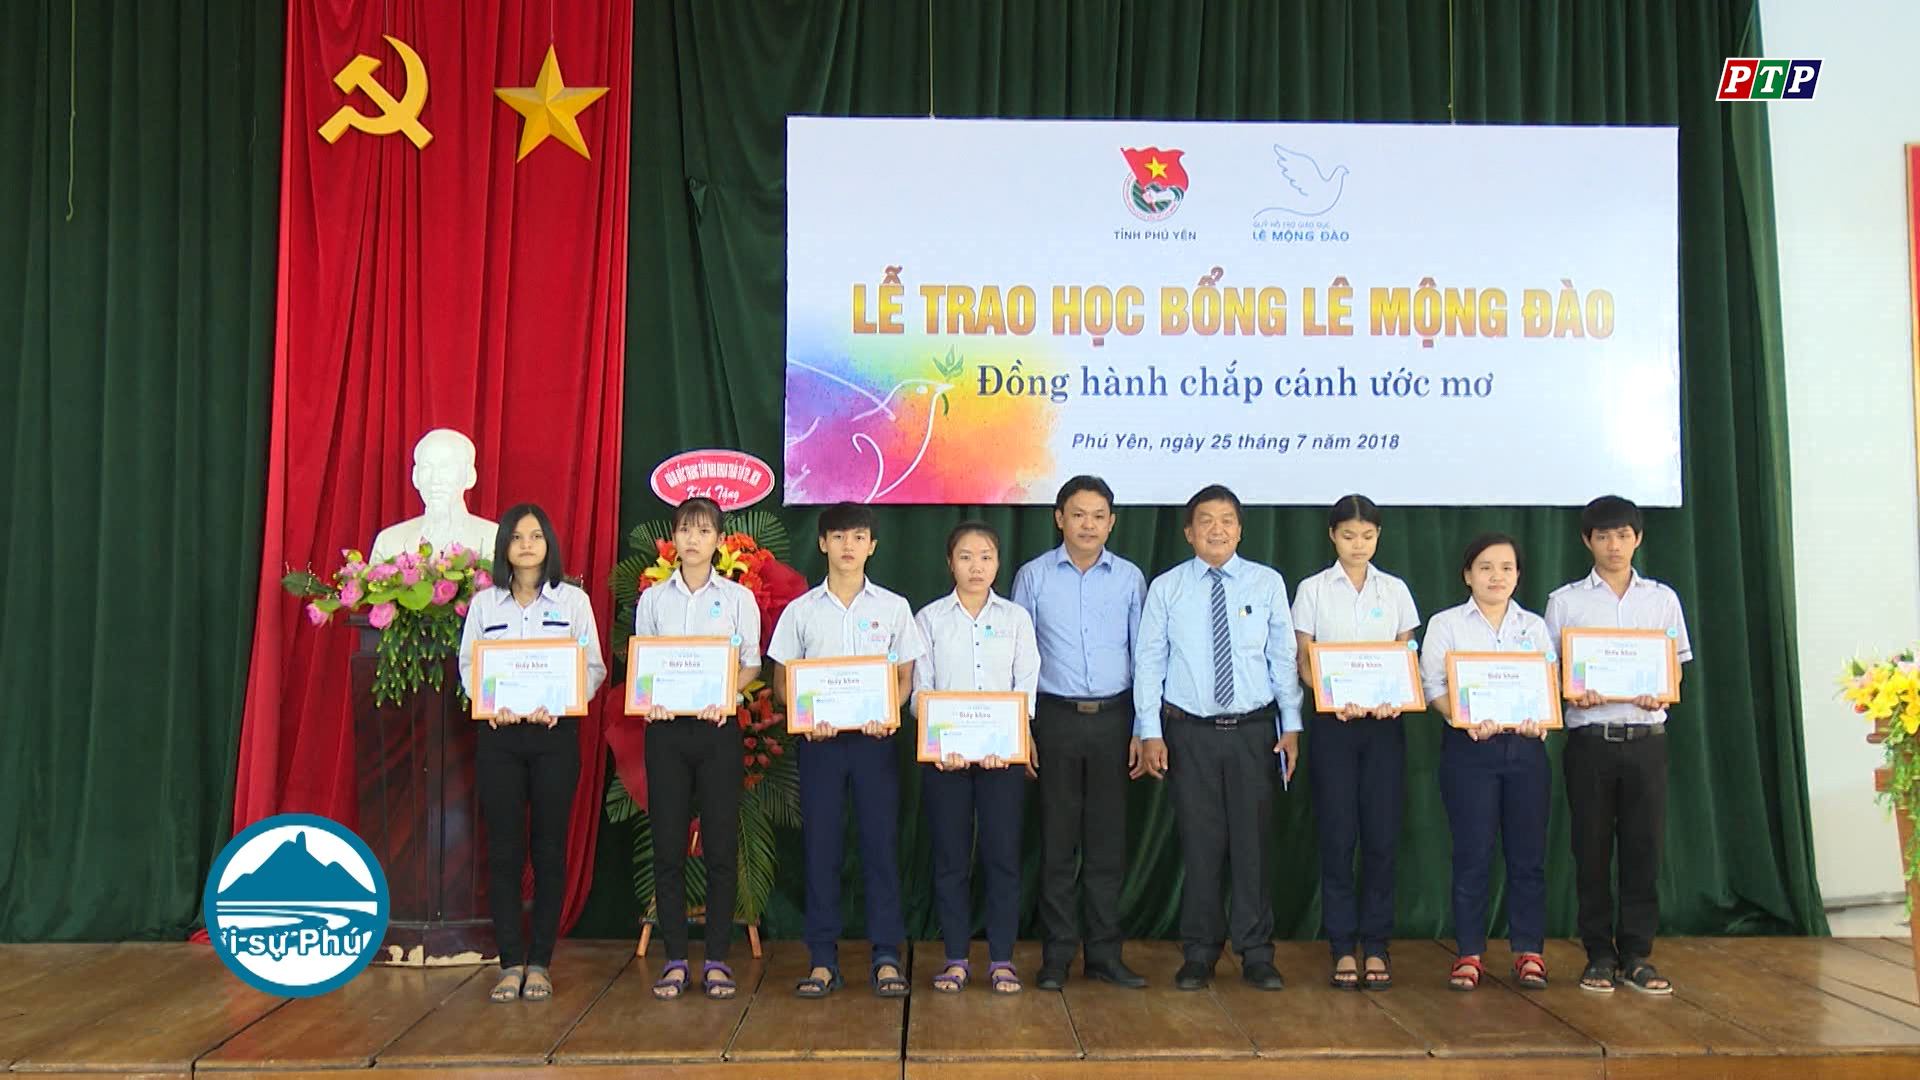 Trao học bổng Lê Mộng Đào cho 47 học sinh nghèo